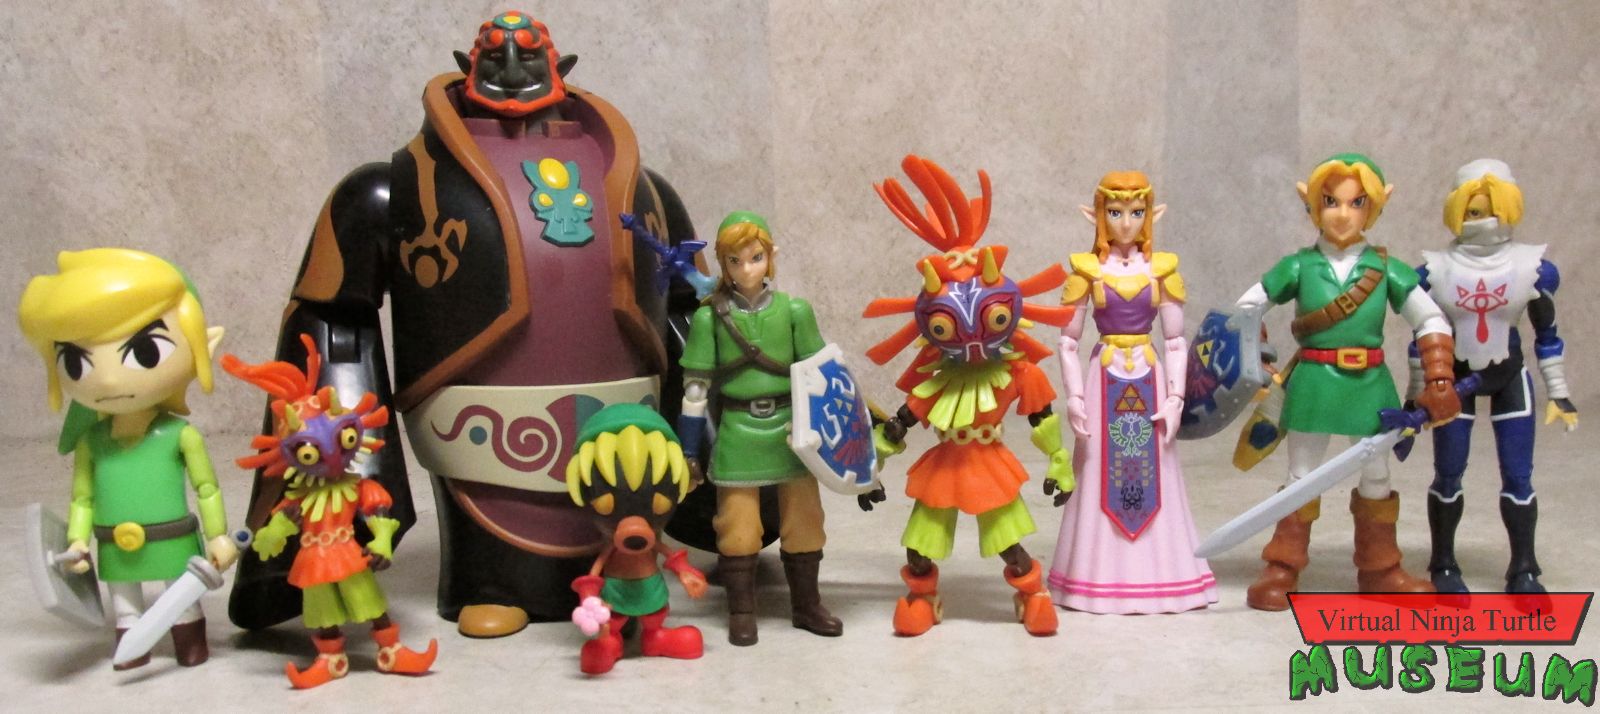 All Jakk's Zelda figures